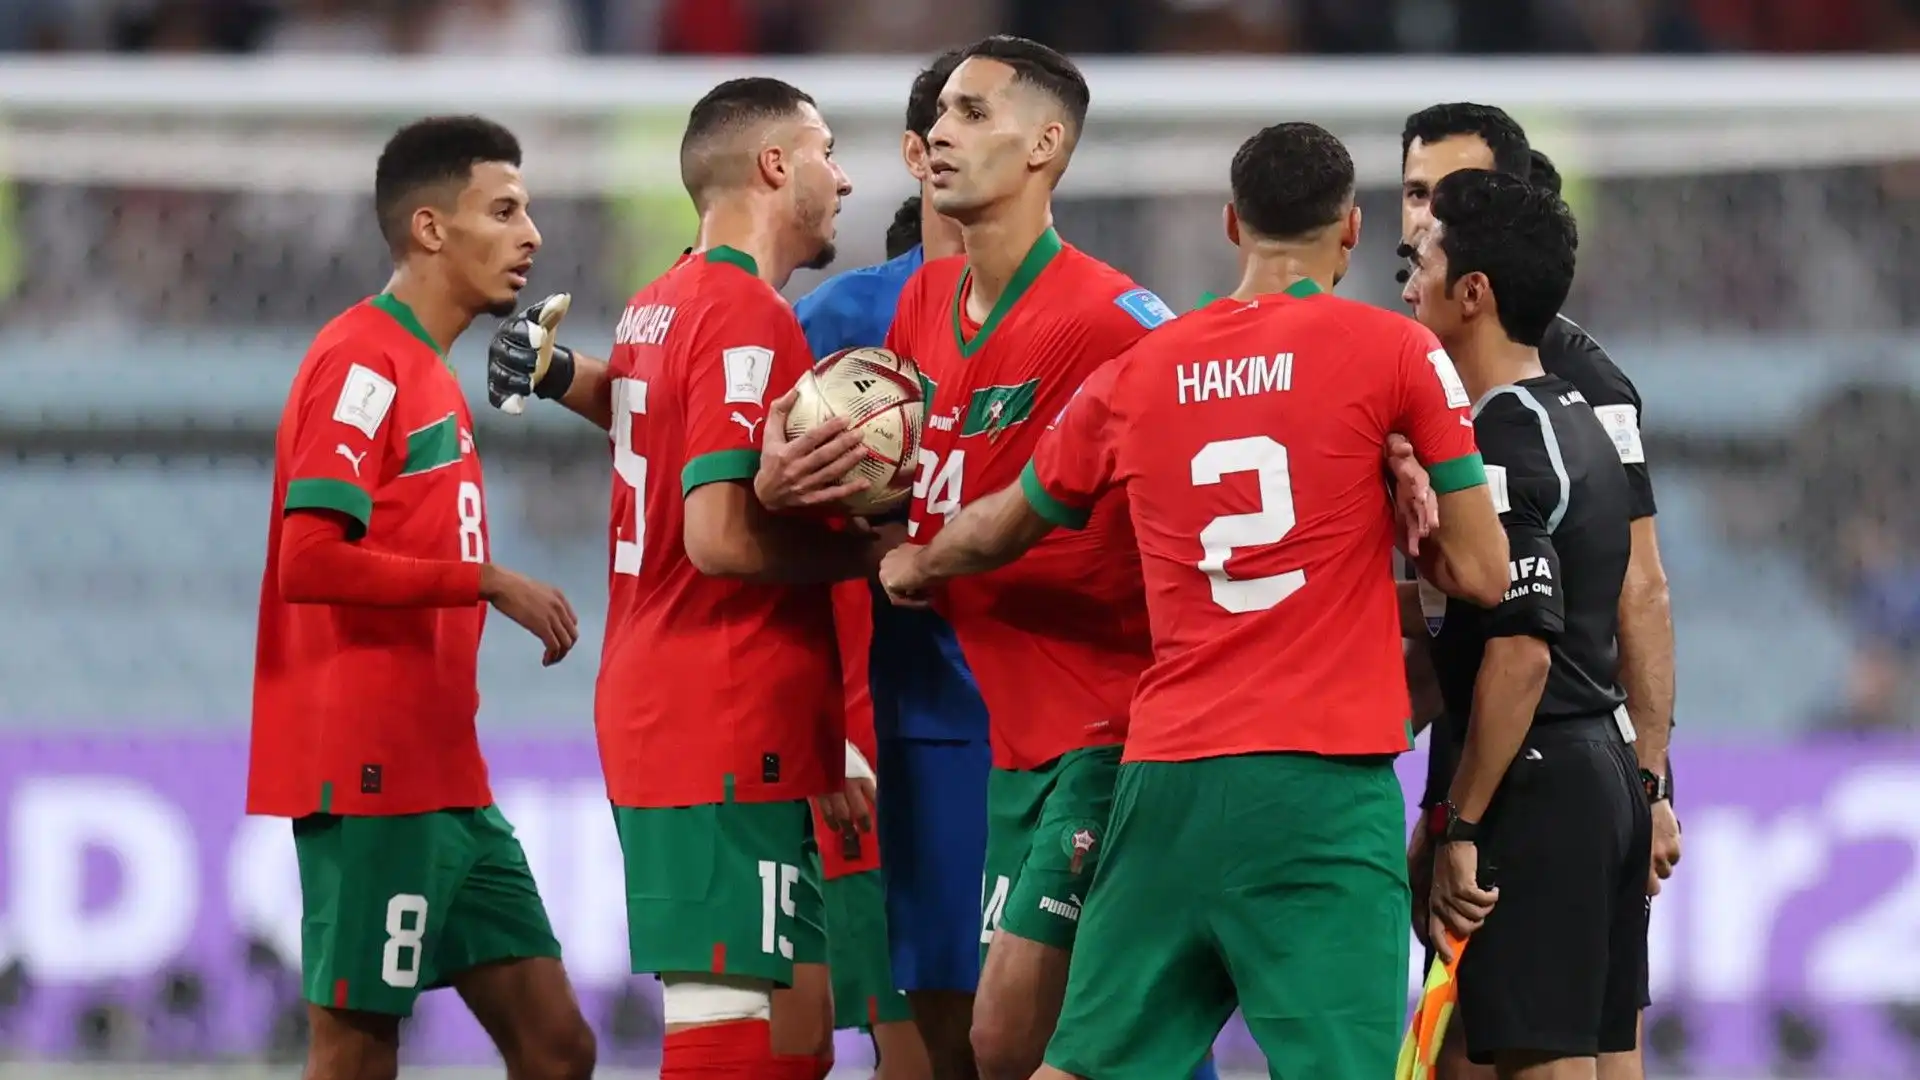 A fine partita i calciatori marocchini hanno accerchiato l'arbitro